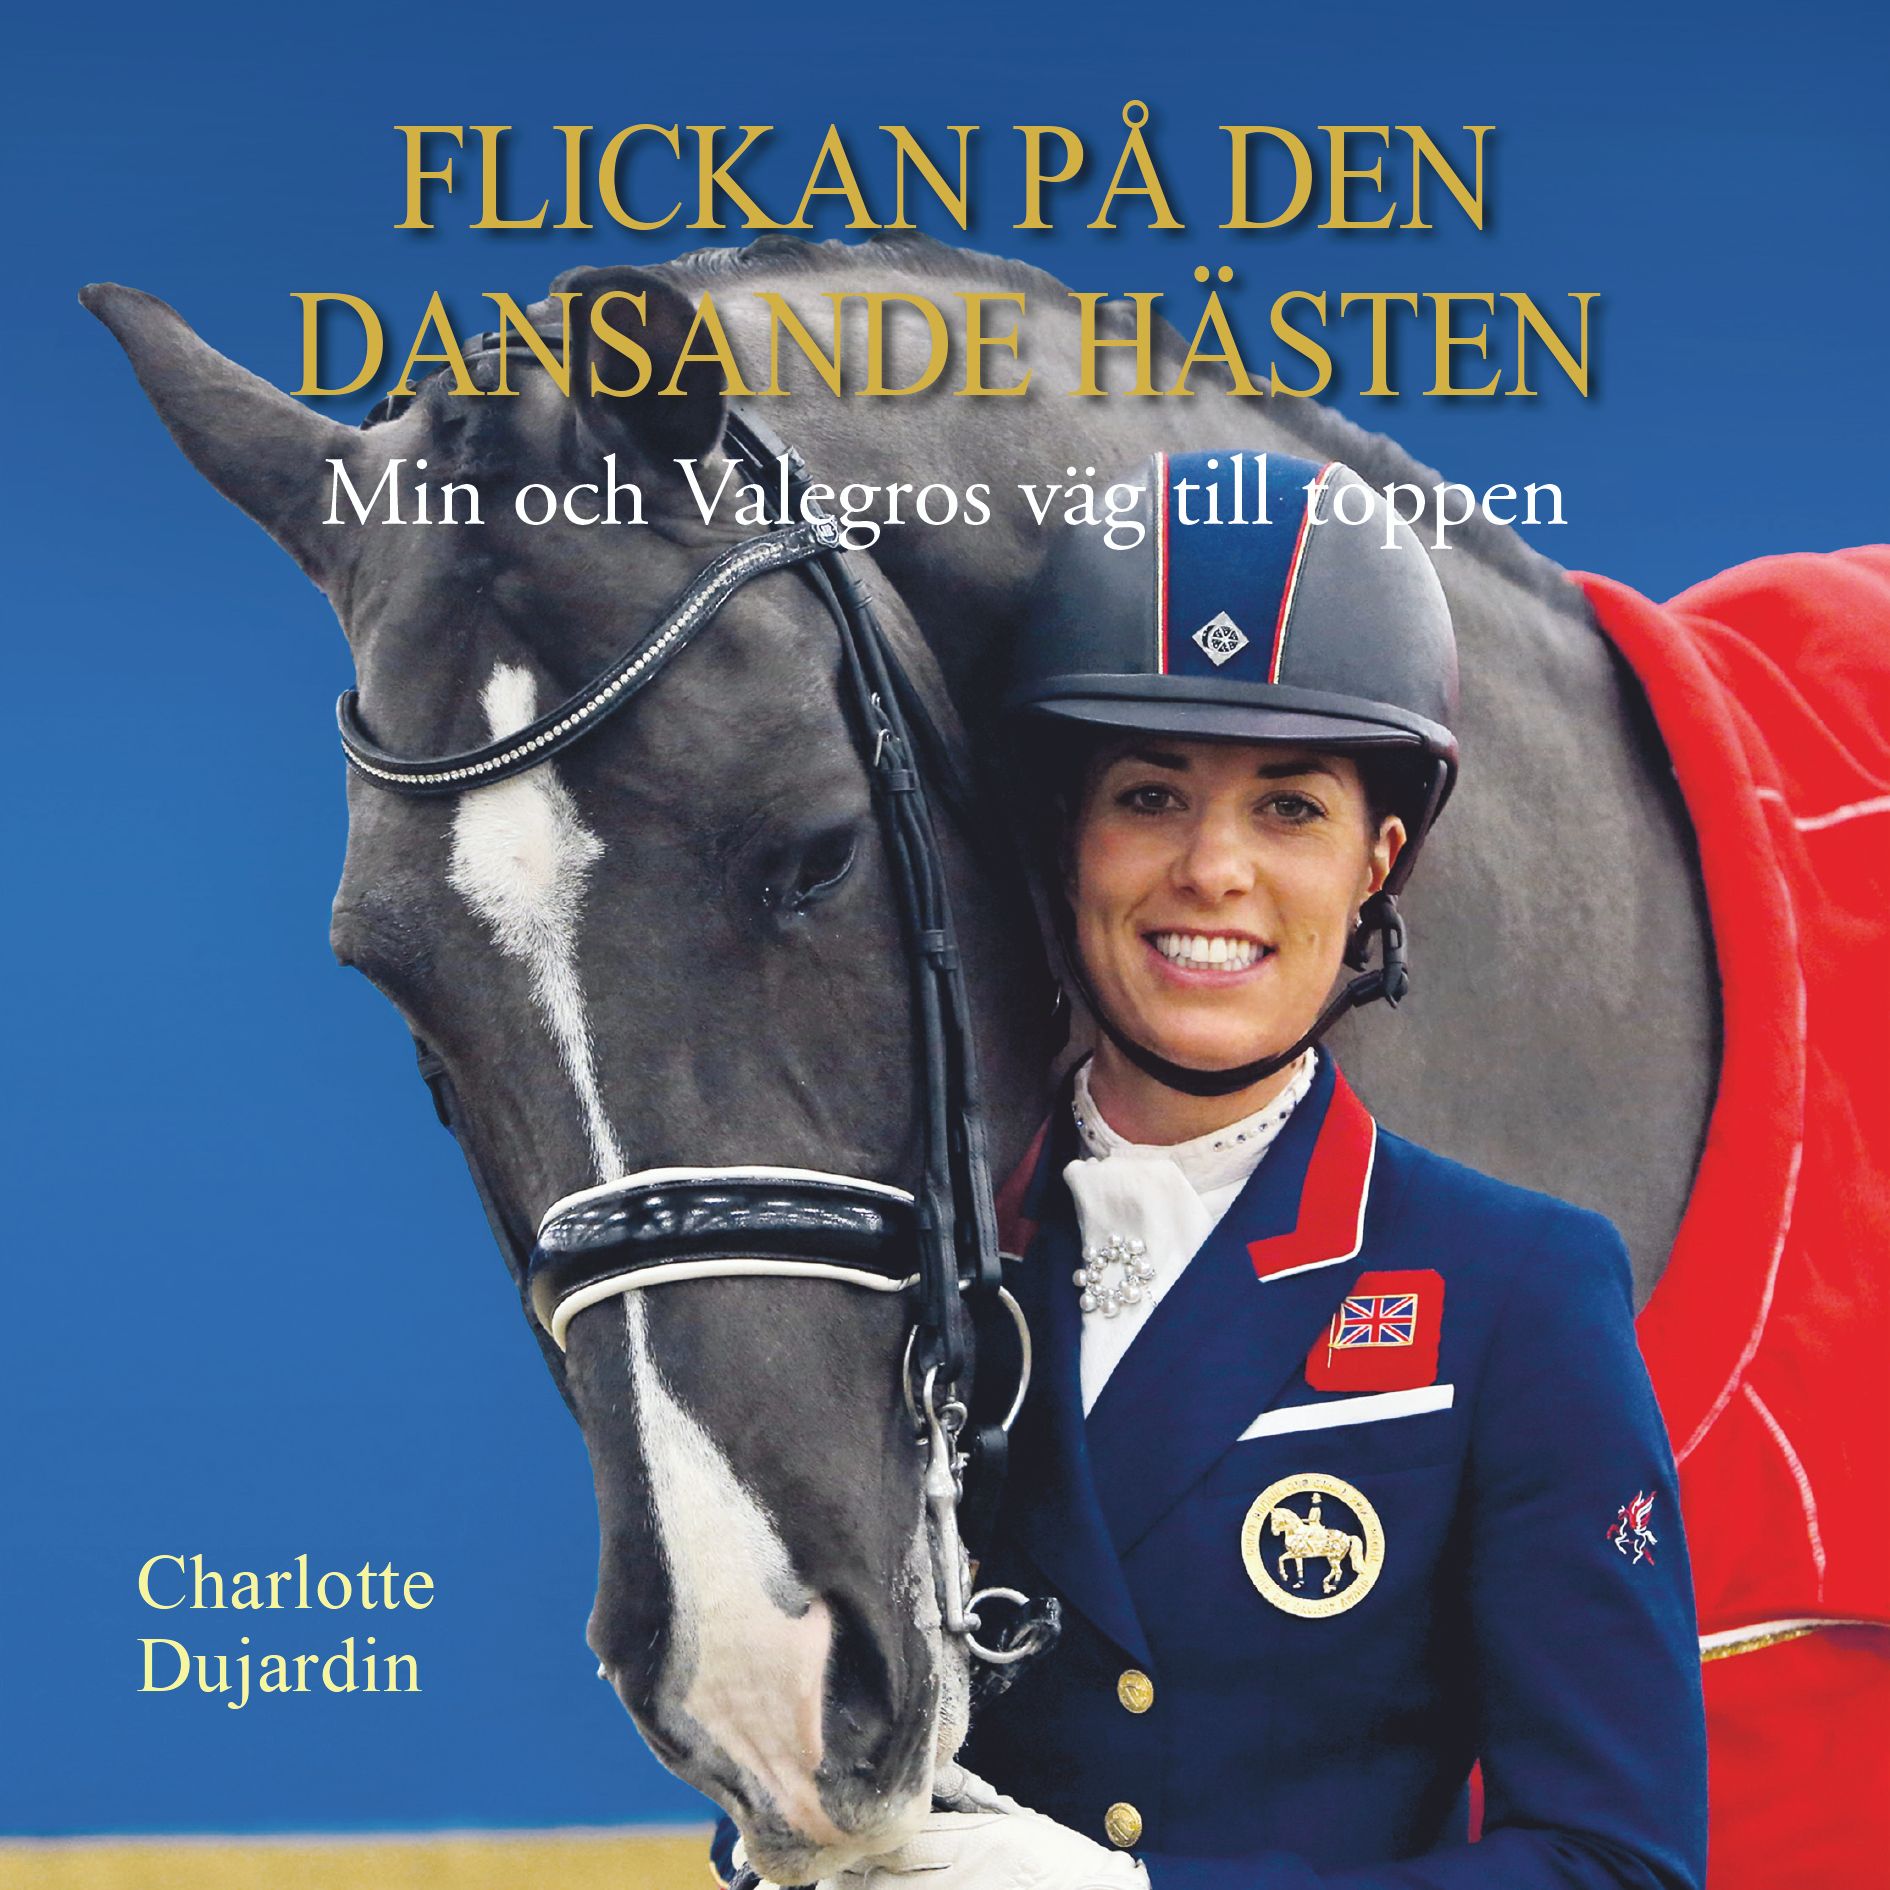 Flickan på den dansande hästen: min och Valegros väg till toppen, audiobook by Charlotte Dujardin